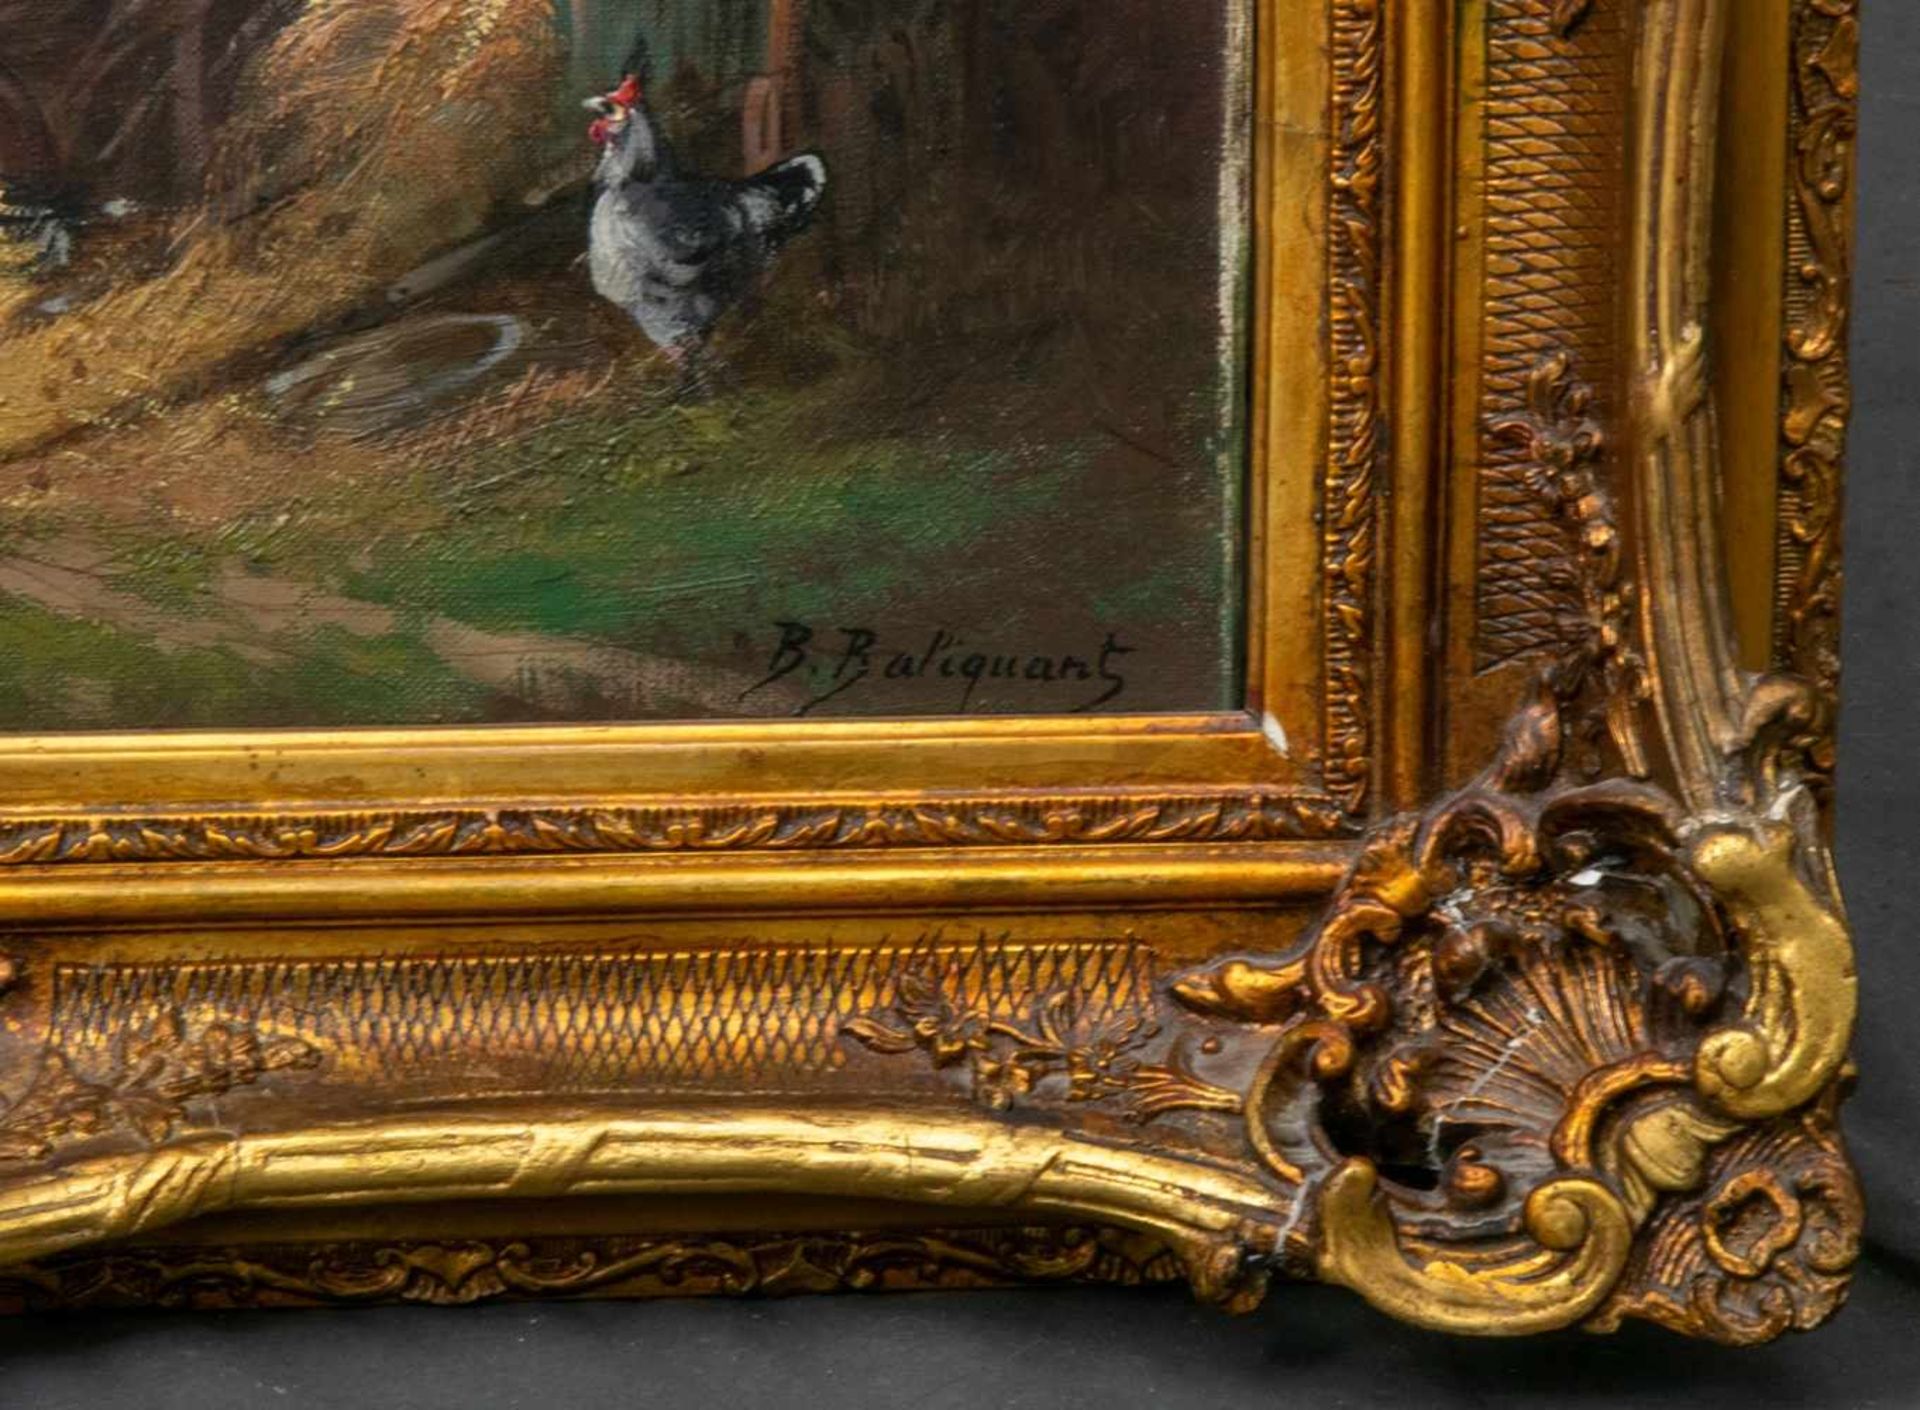 "Hühnerstall", Gemälde, Öl auf Leinwand, ca. 46 x 55 cm, signiert "B. Baliguant", prächtiger - Bild 5 aus 6